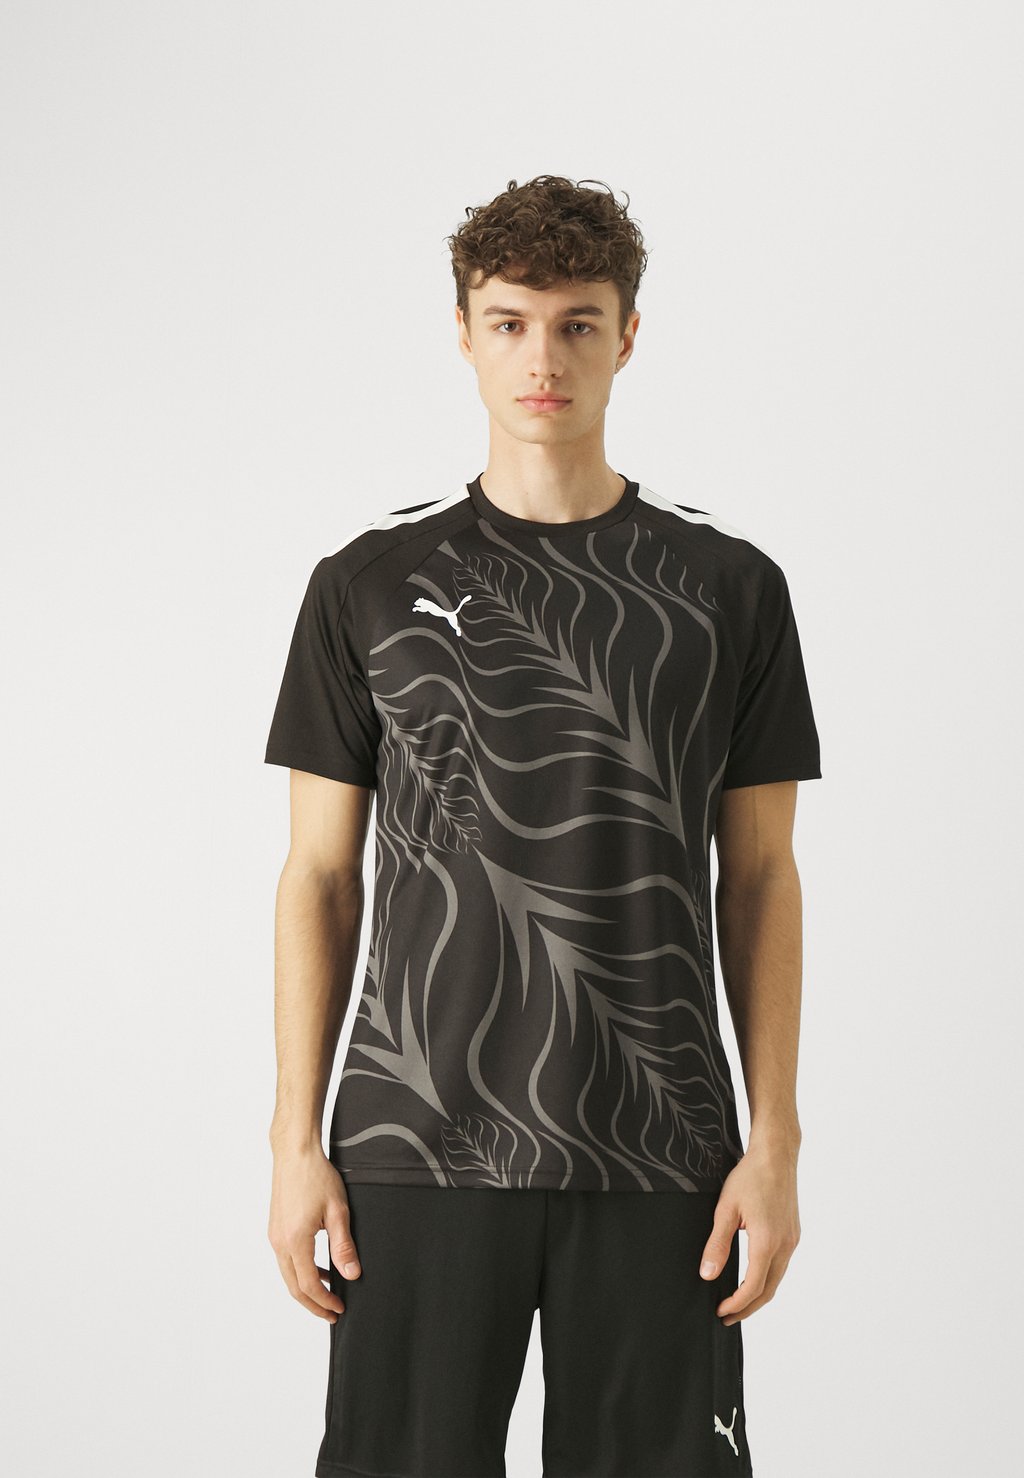 Спортивная футболка Individualliga Graphic Puma, цвет puma black фото